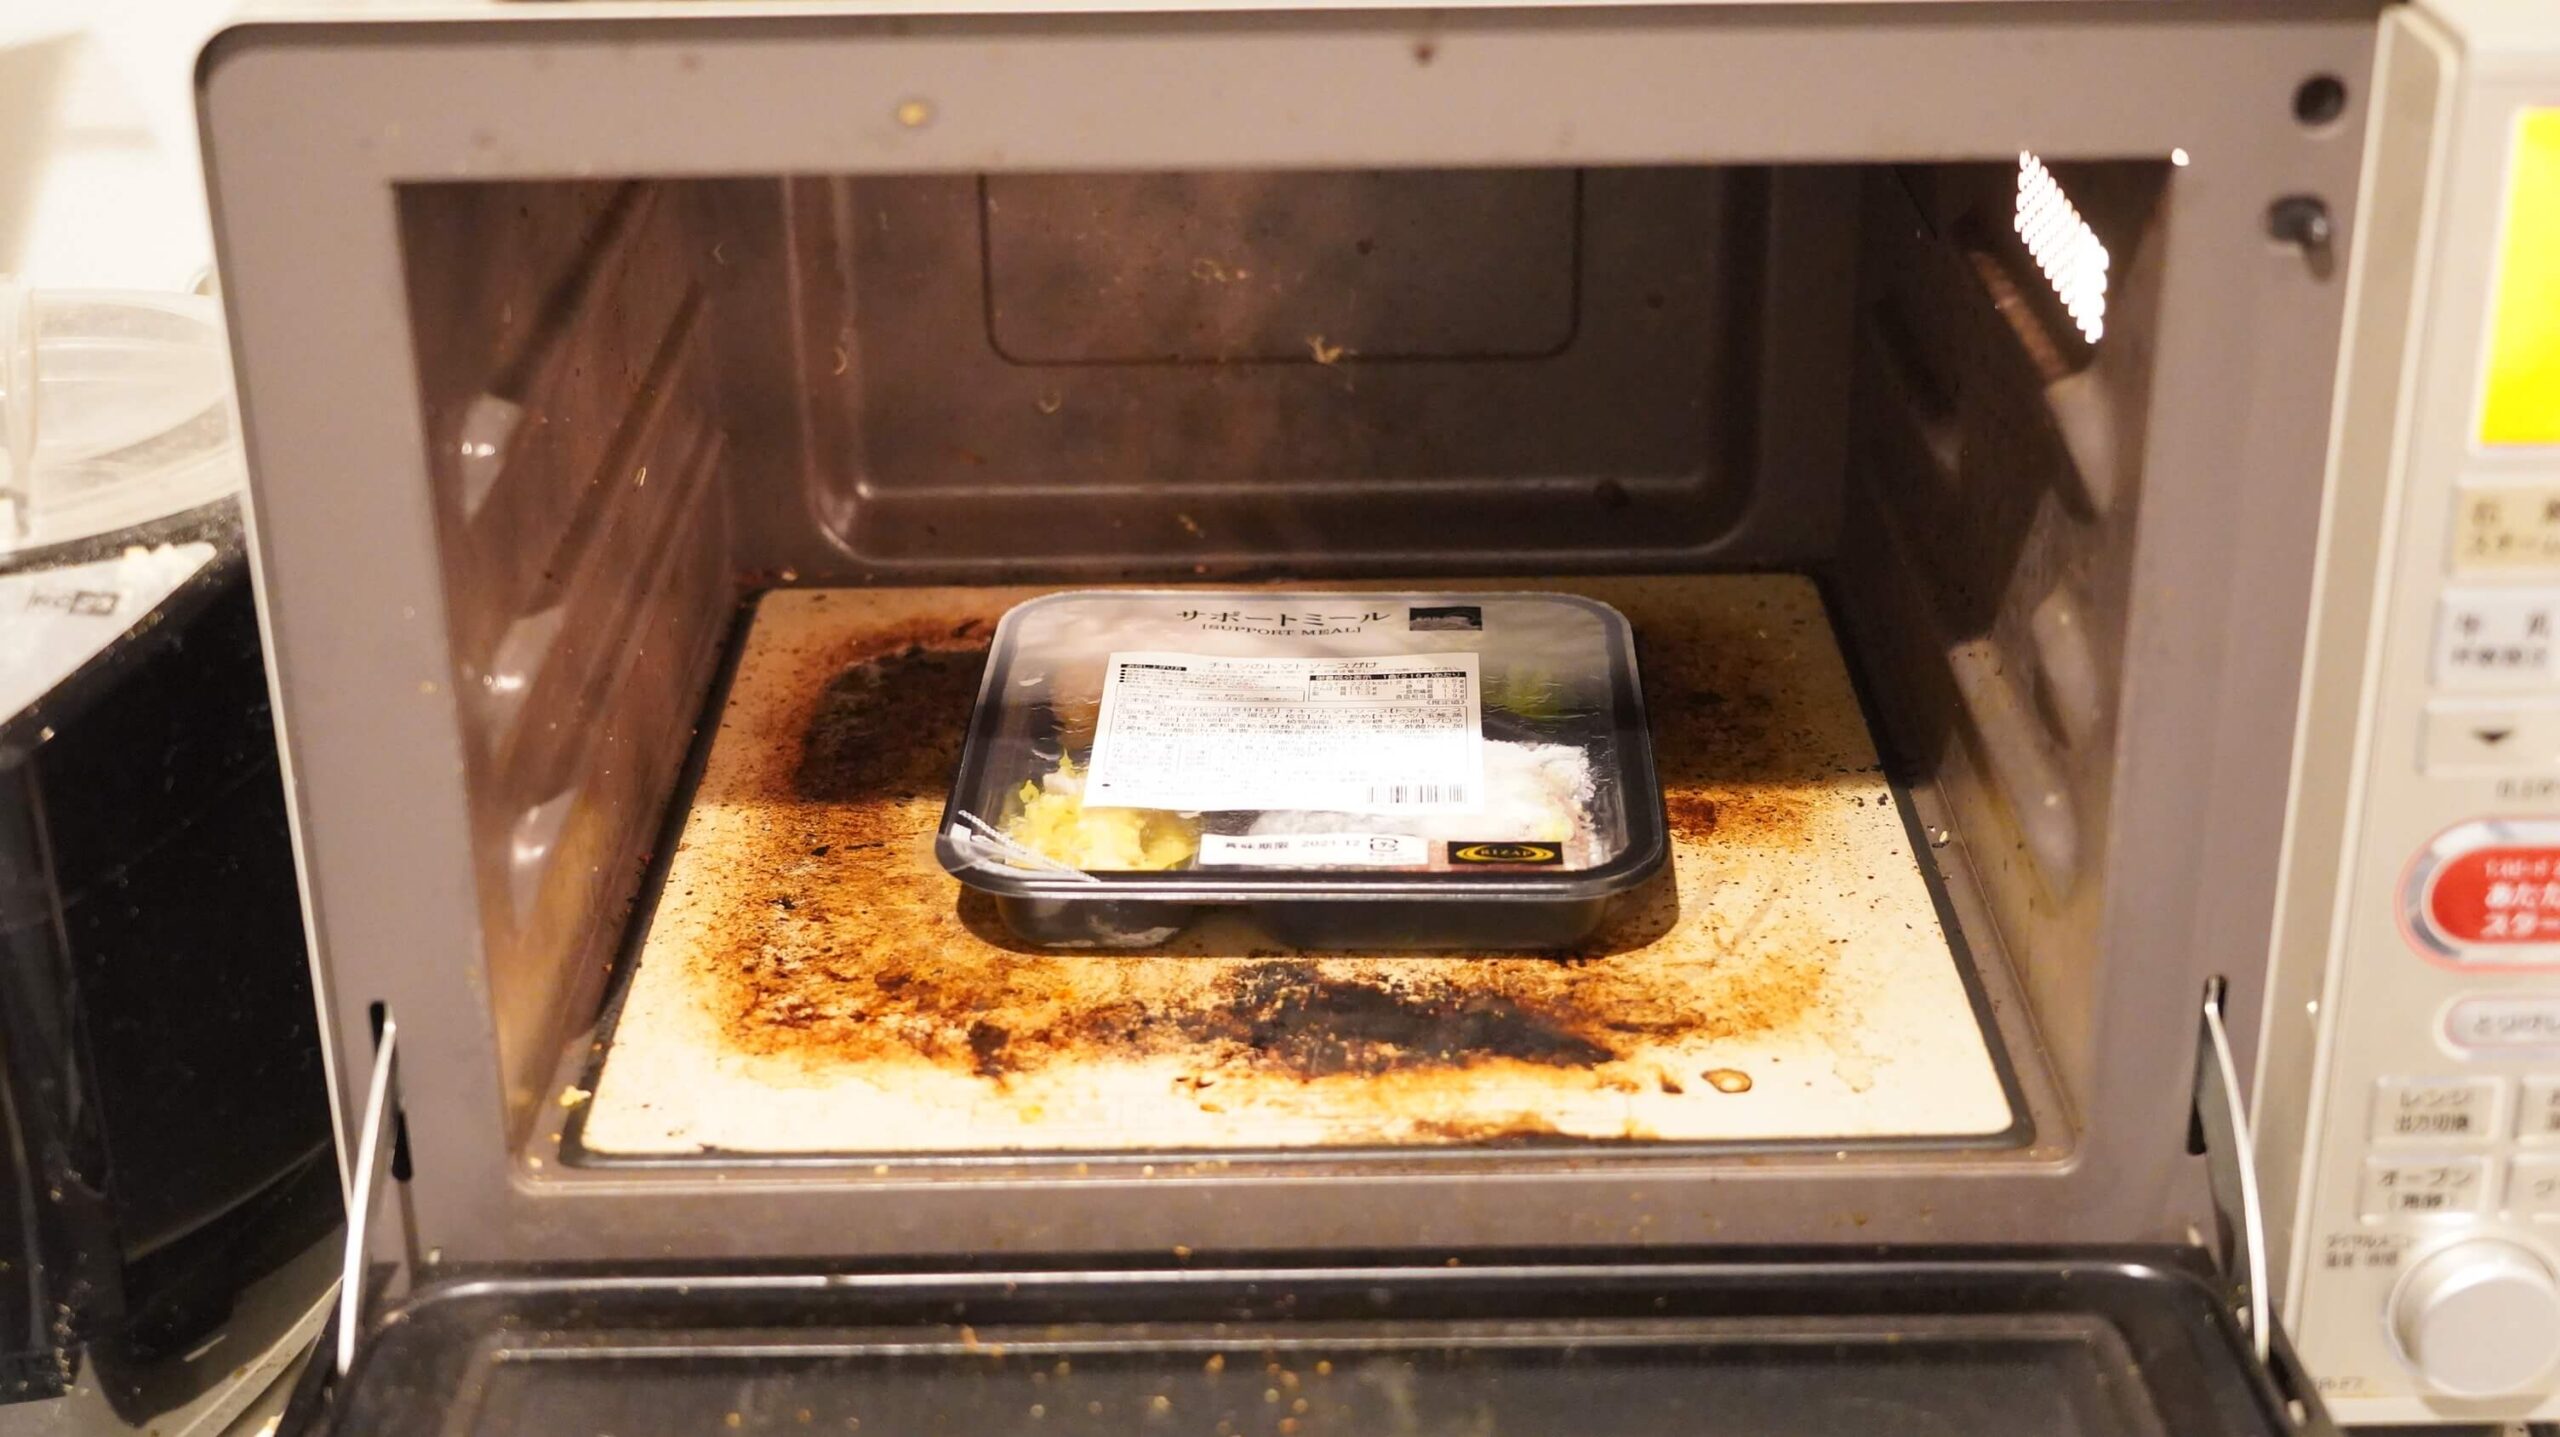 ライザップのサポートミール「チキンのトマトソースがけ」を電子レンジで加熱している写真